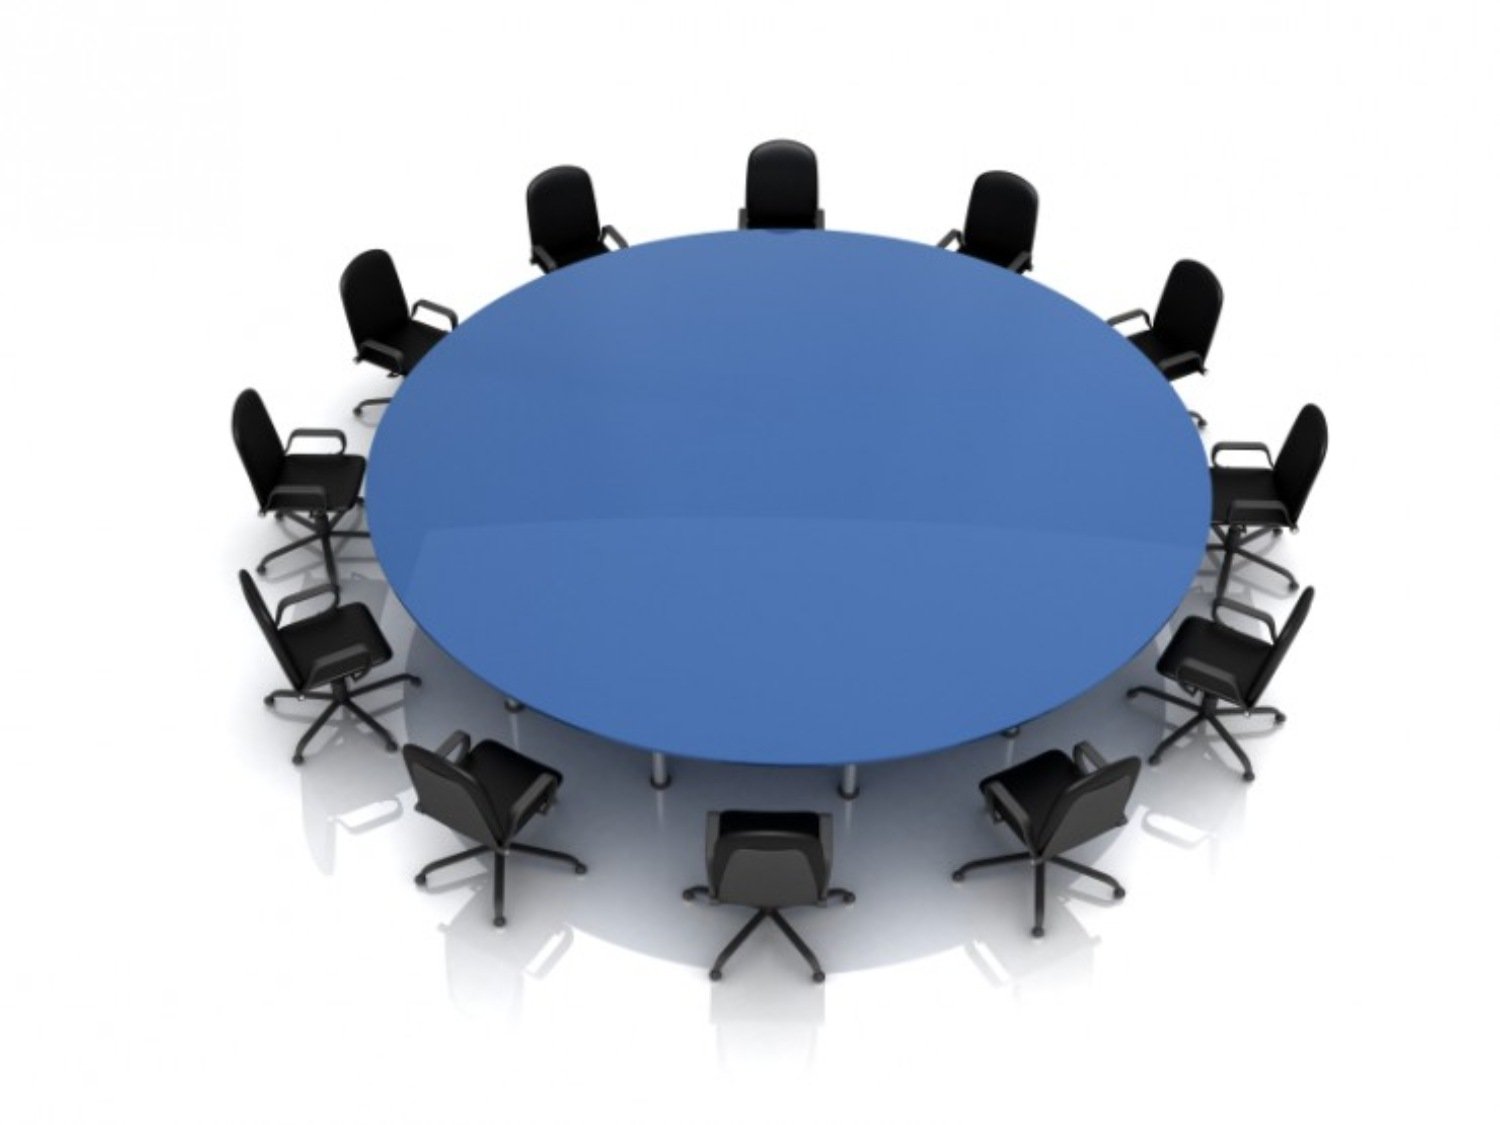 Гости круглого стола. Круглый стол. Круглый стол дискуссия. Круглый стол мероприятие. Круглый стол заседание.